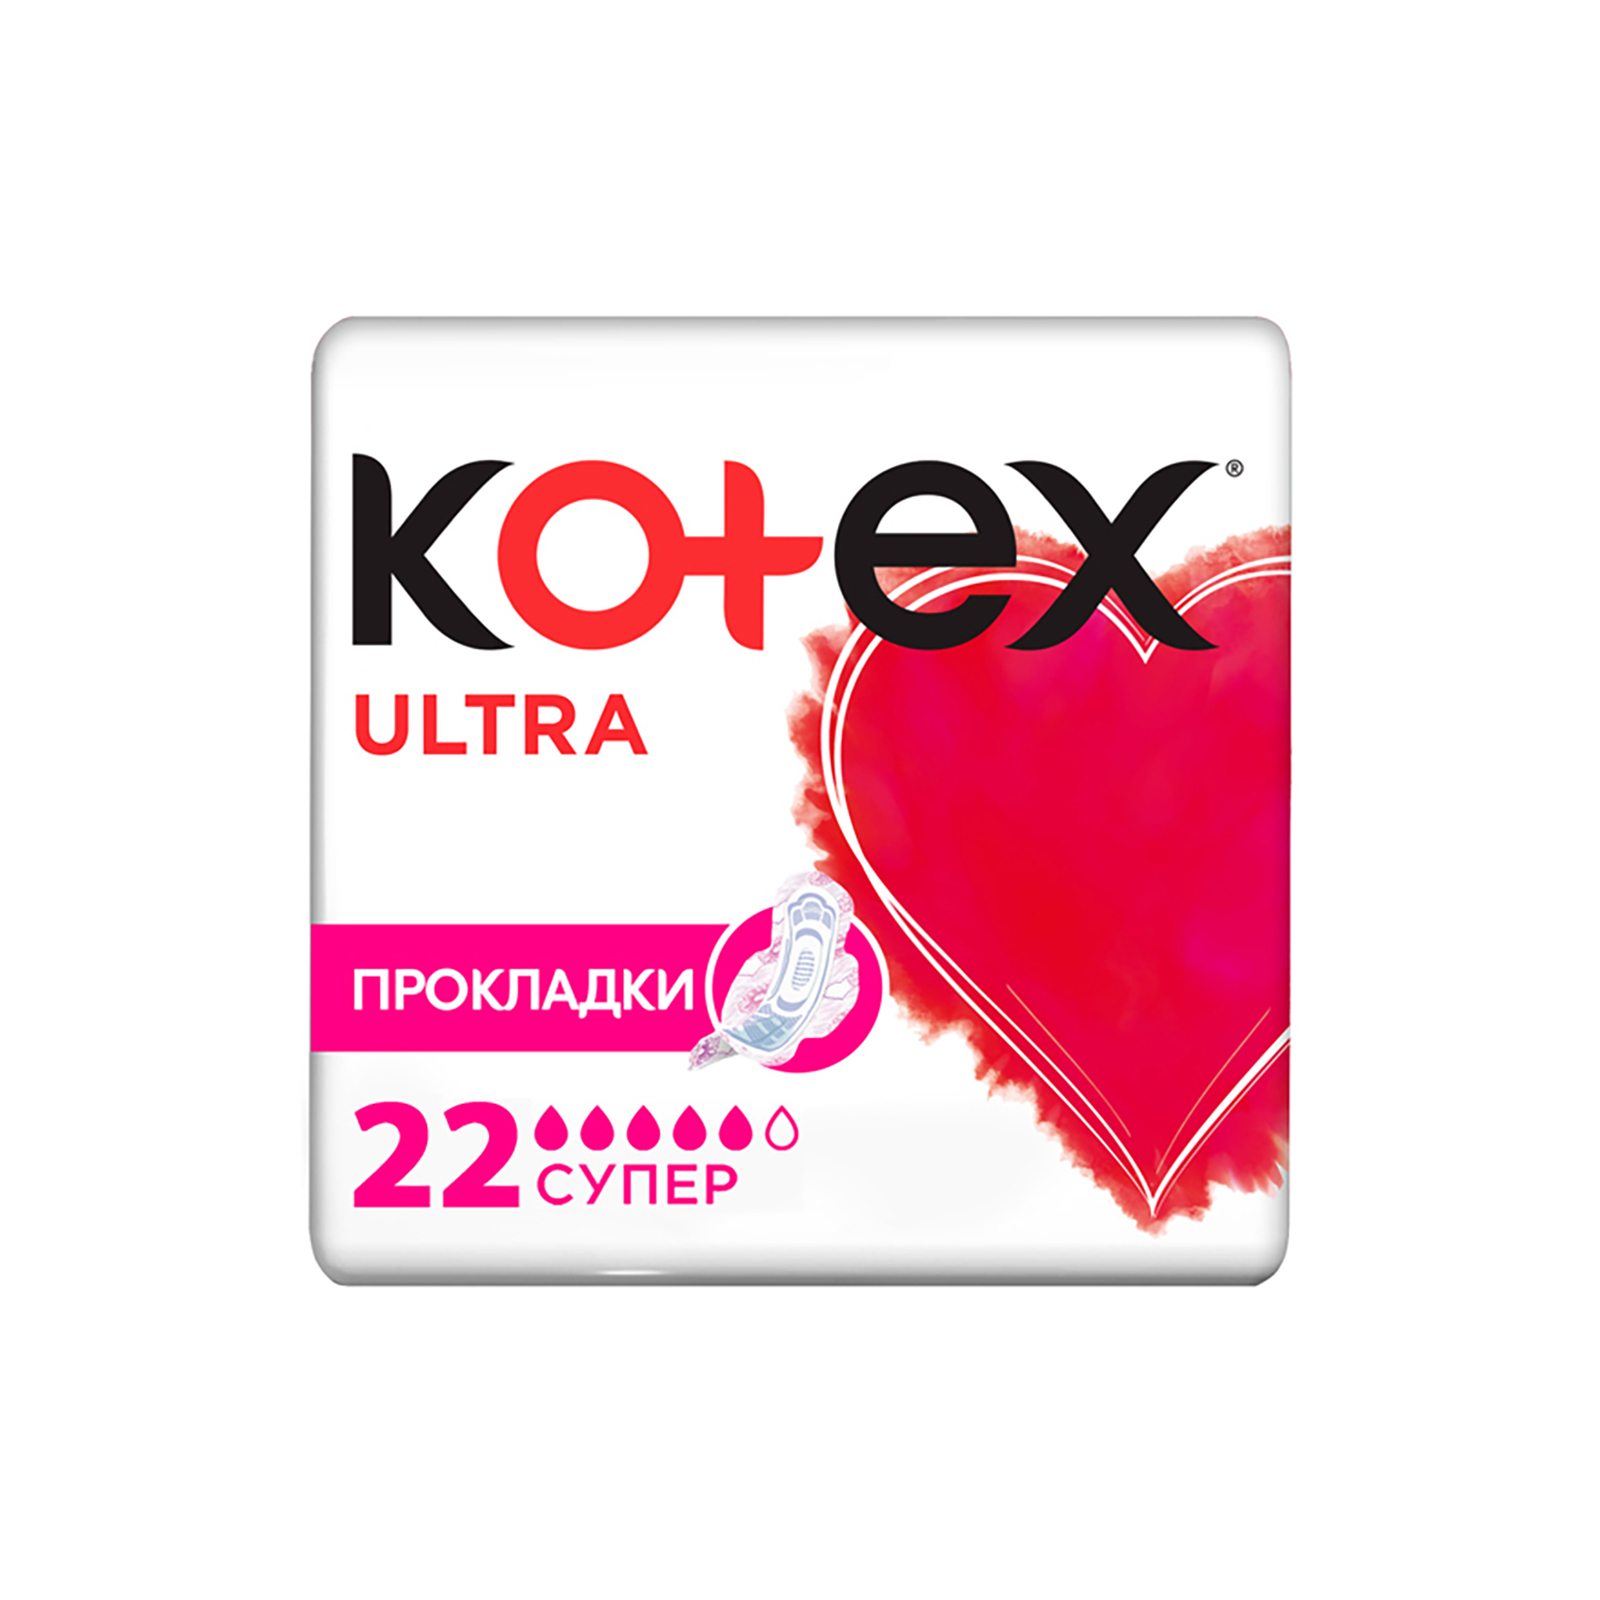 Гігієнічні прокладки Kotex Ultra Super 8 шт. (5029053542645)